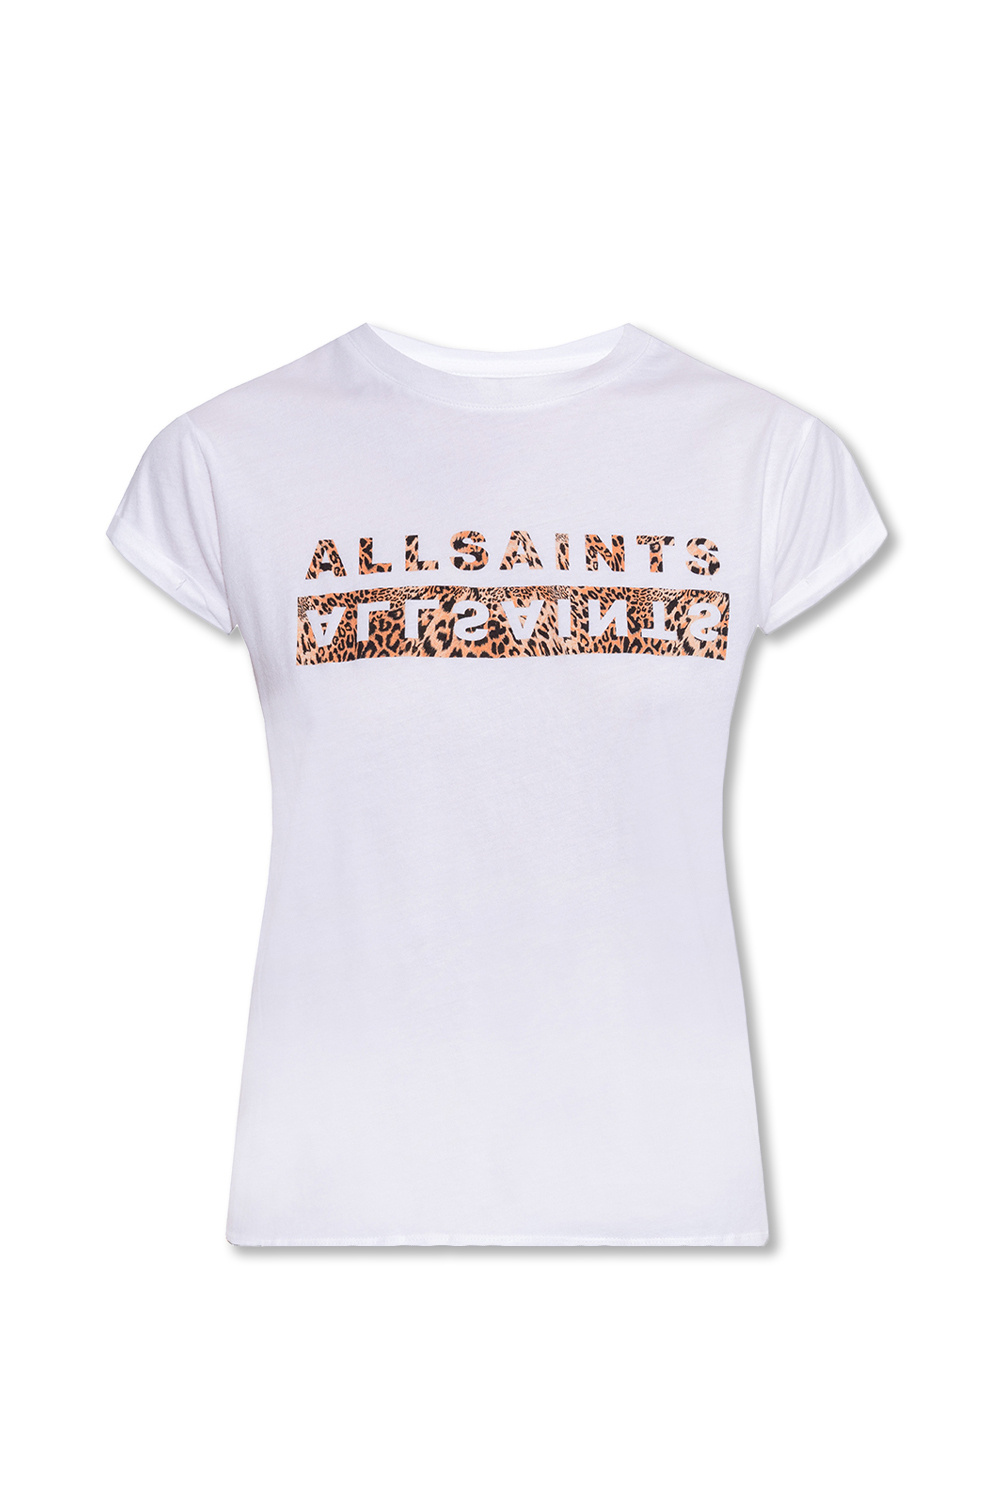 AllSaints ‘Juxta’ T-shirt with logo